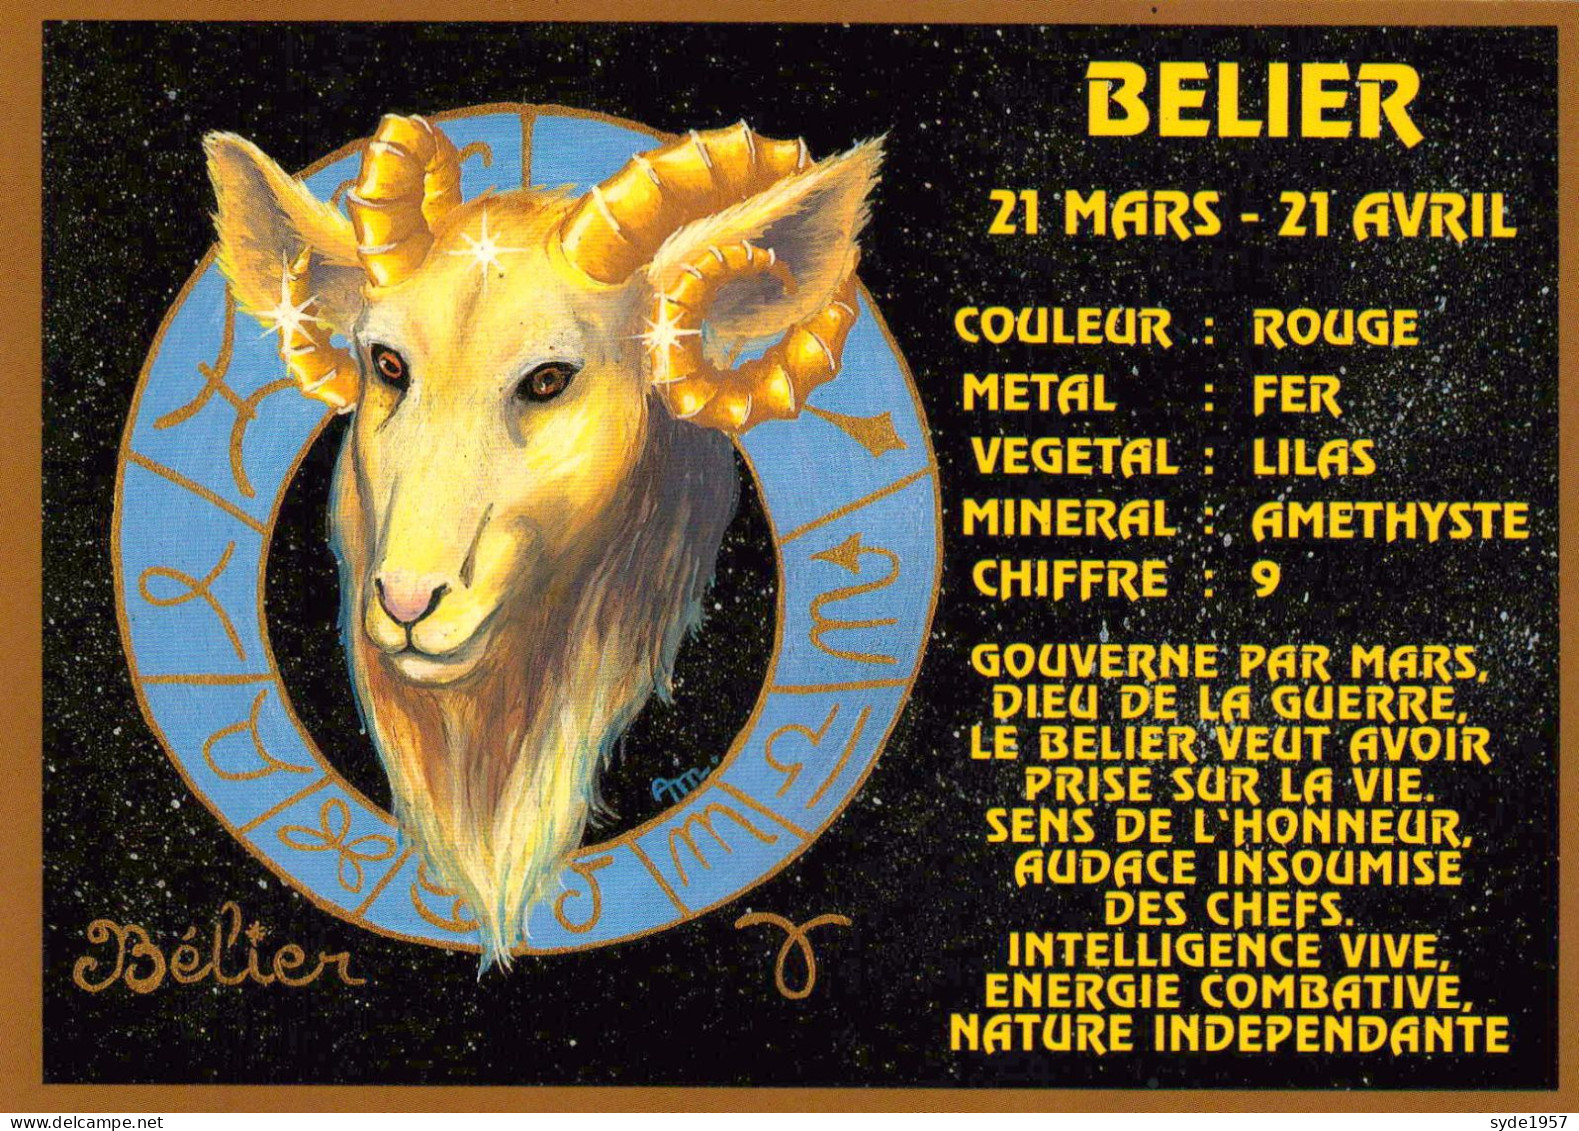 12 cartes : tous les signes du zodiaque - édition Abeille-Carte série  2269 - superbe illustration